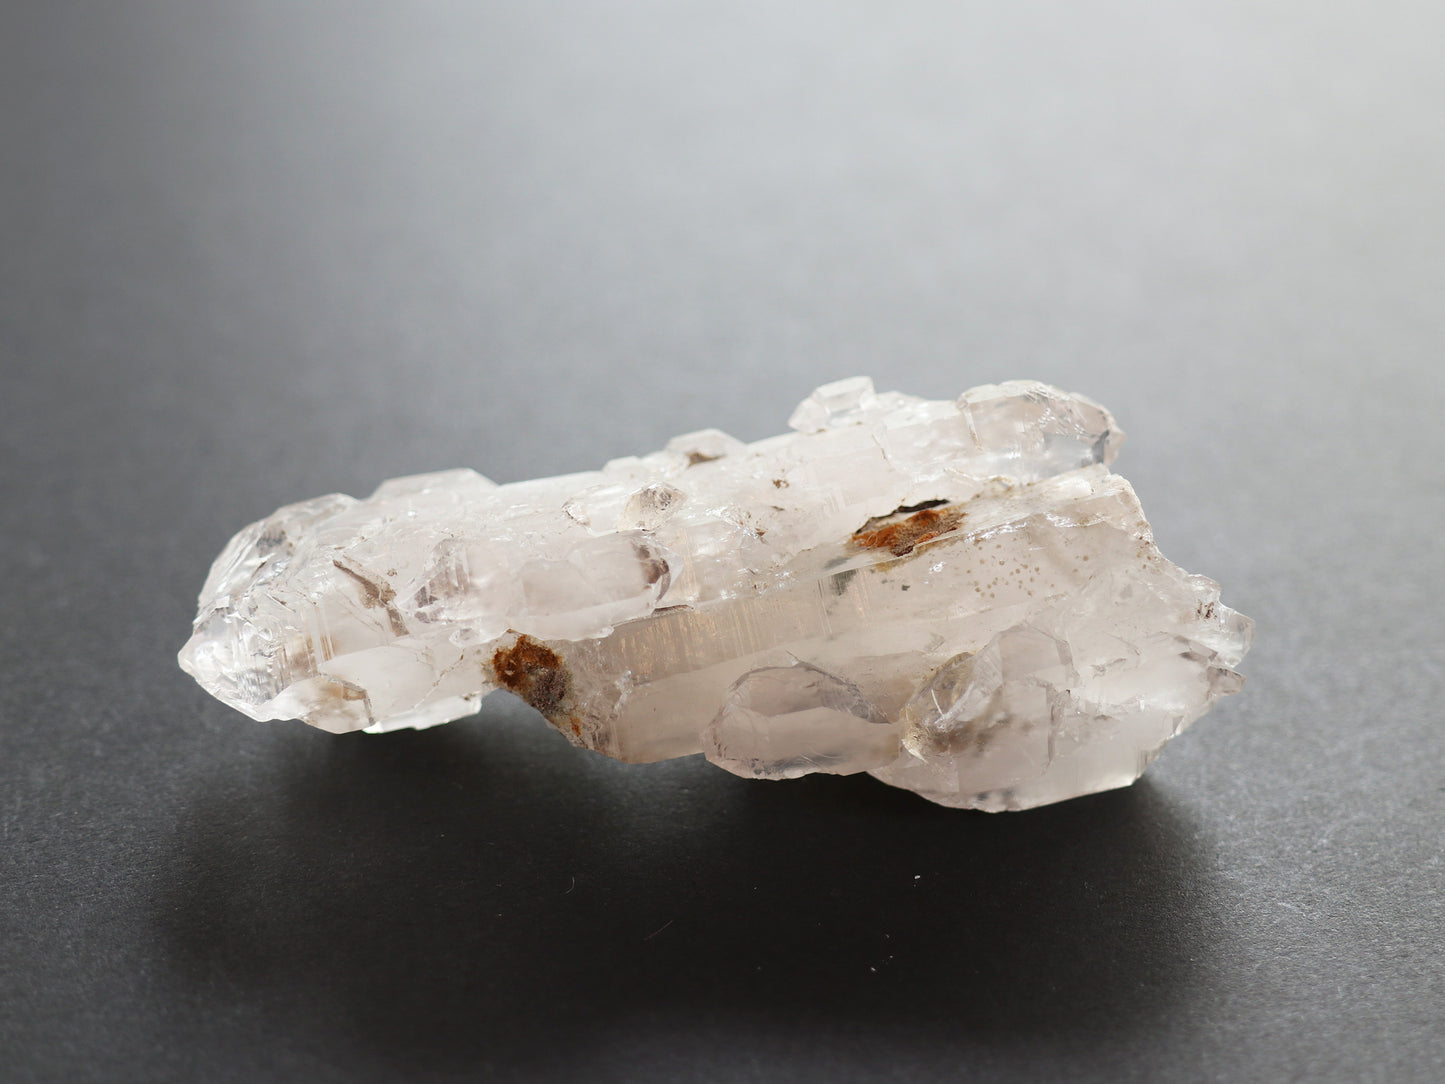 エレスチャル、ダブルポイント、セプター、ガネーシュヒマール産ヒマラヤ水晶原石PN:GG-126